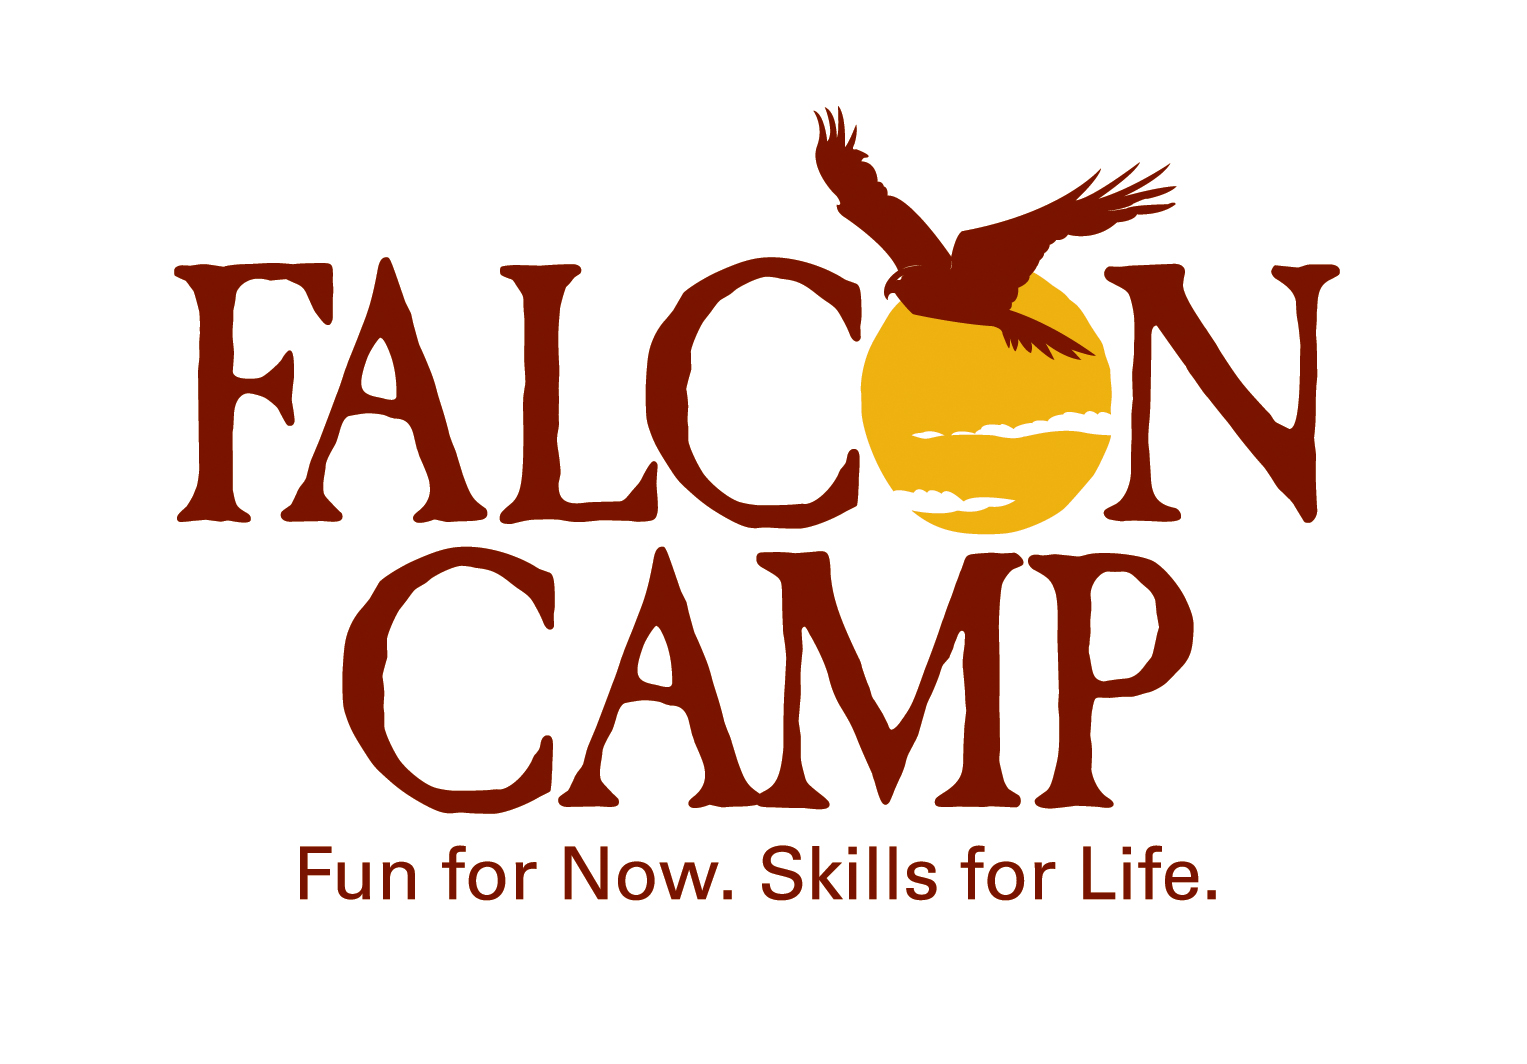 Falcon Camp